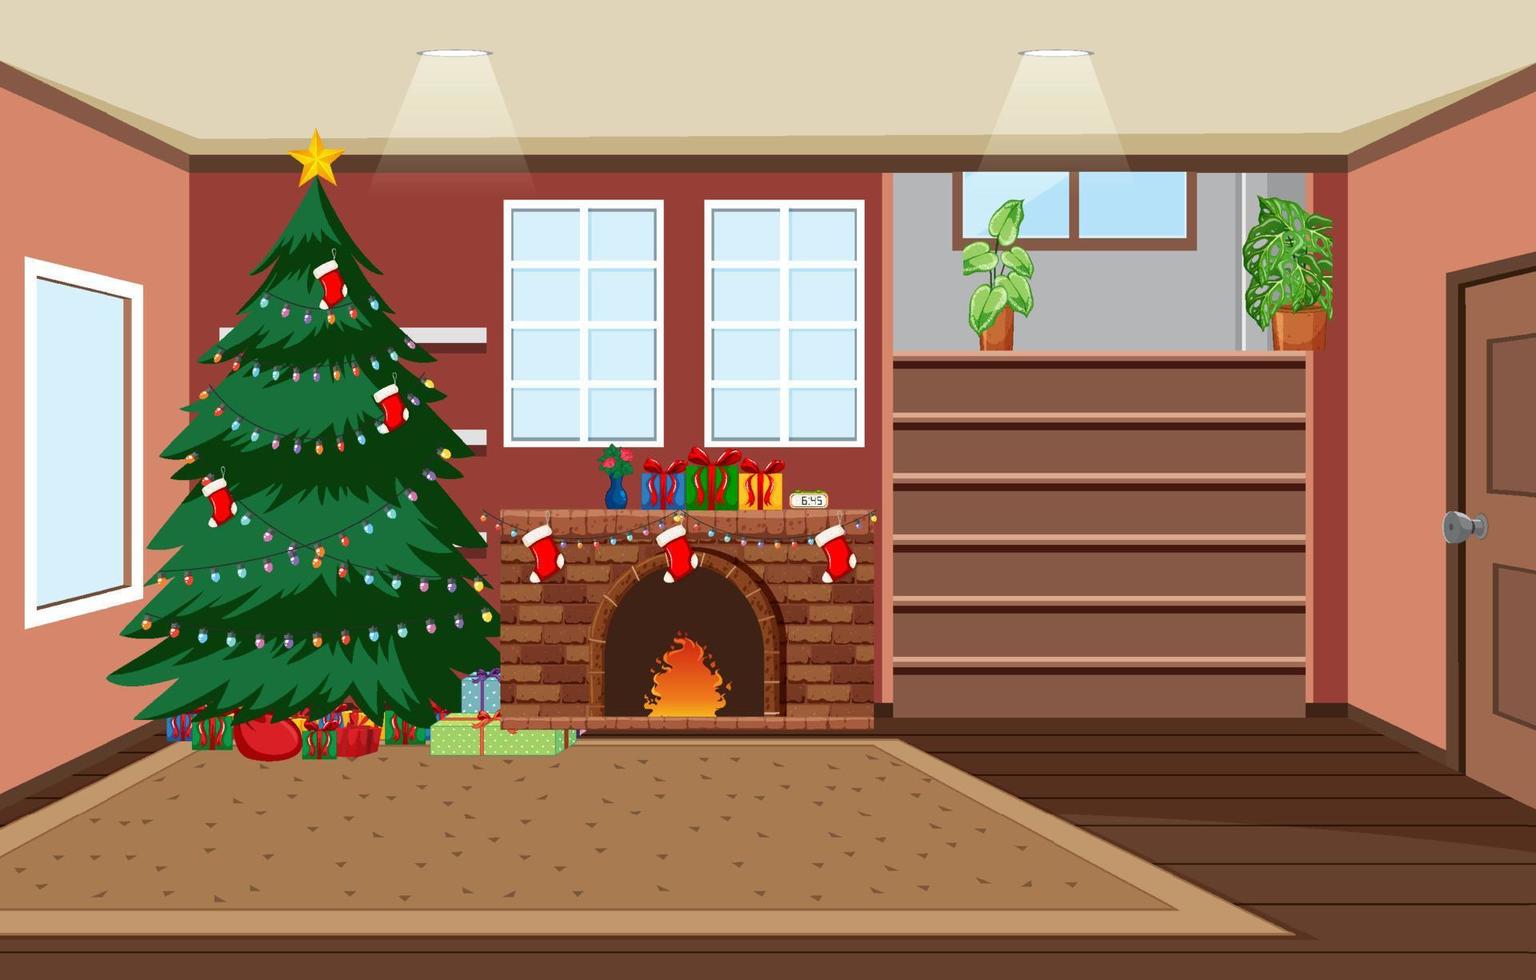 quarto vazio com árvore de natal e lareira decorada com elementos de natal vetor